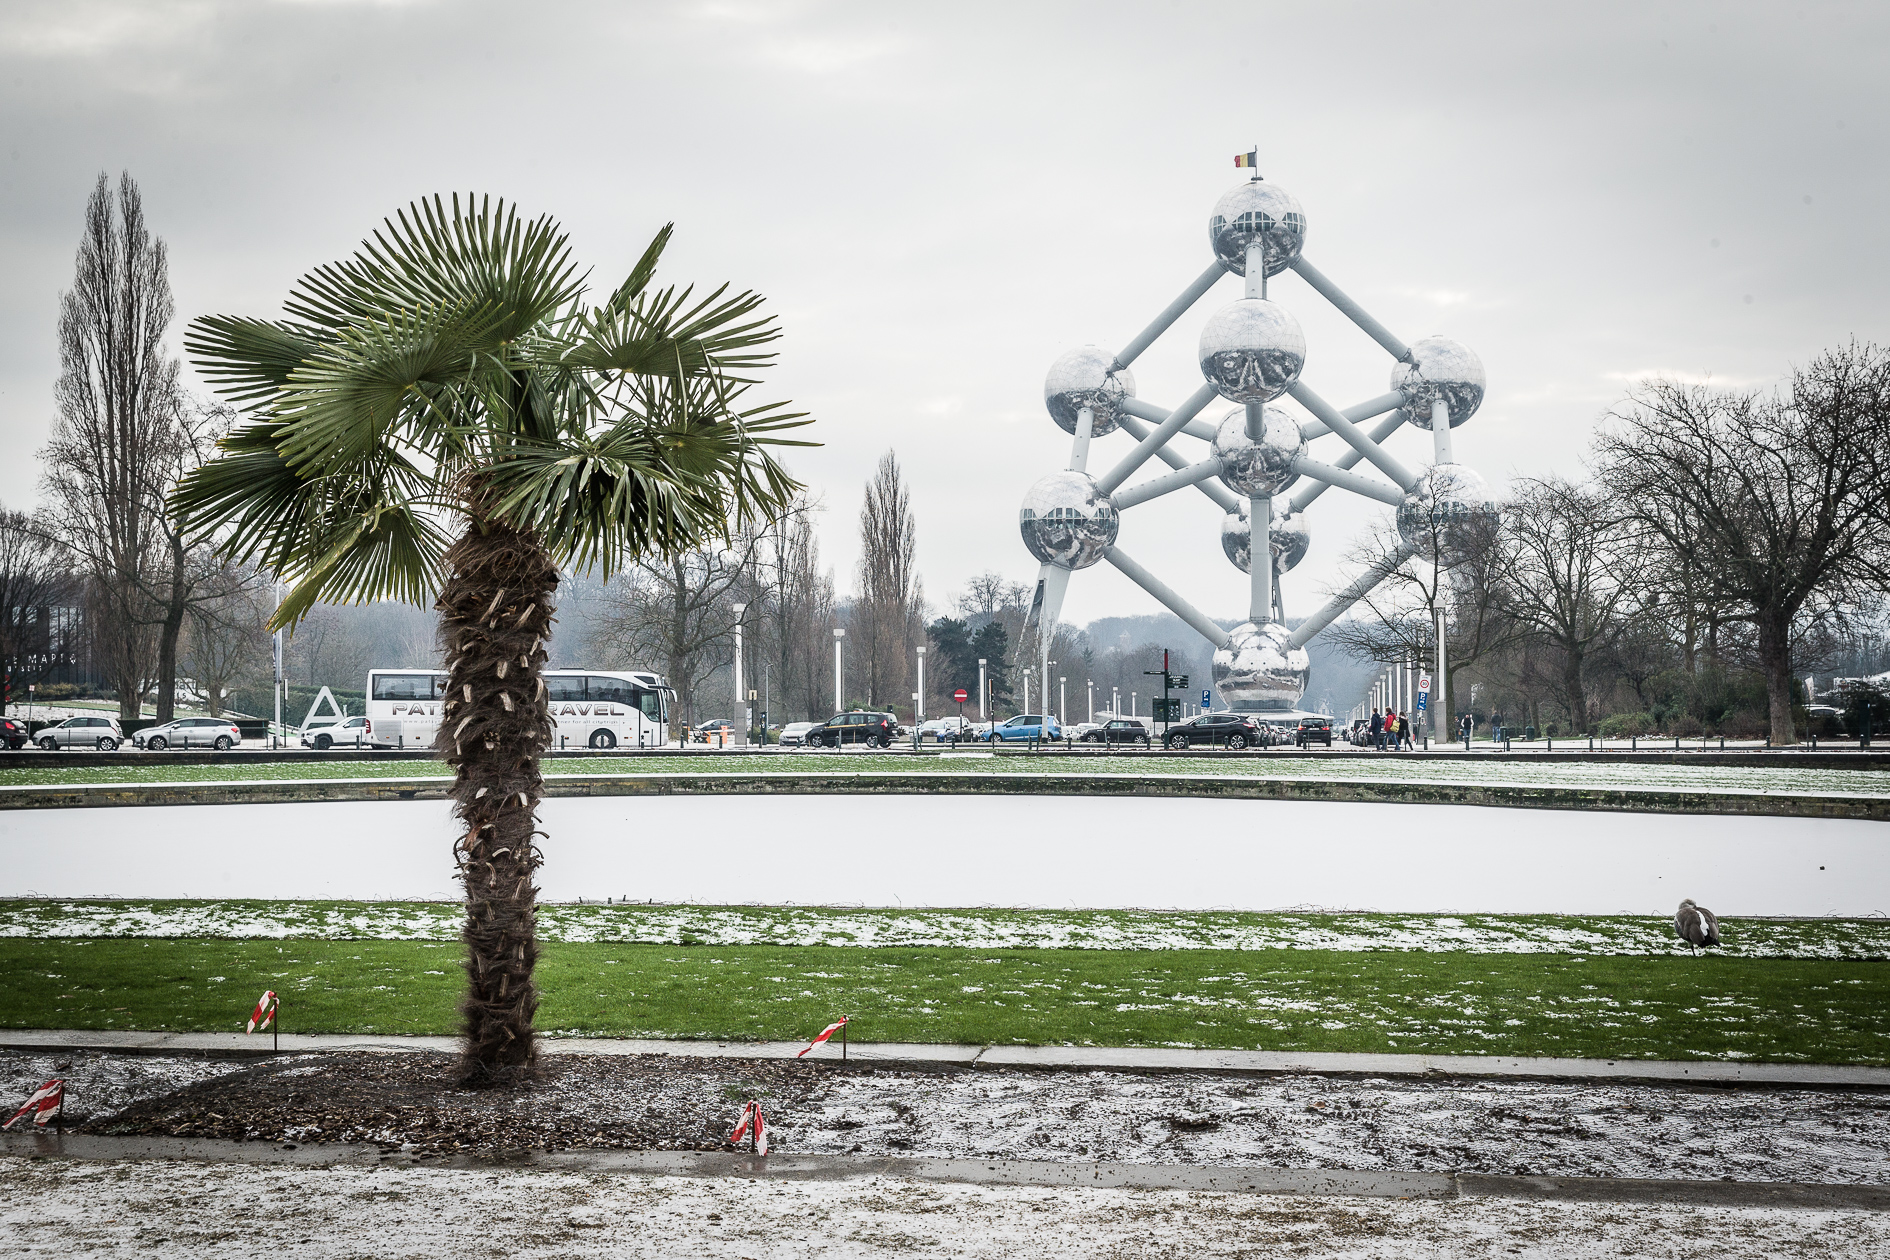 Atomium Brussels during winter